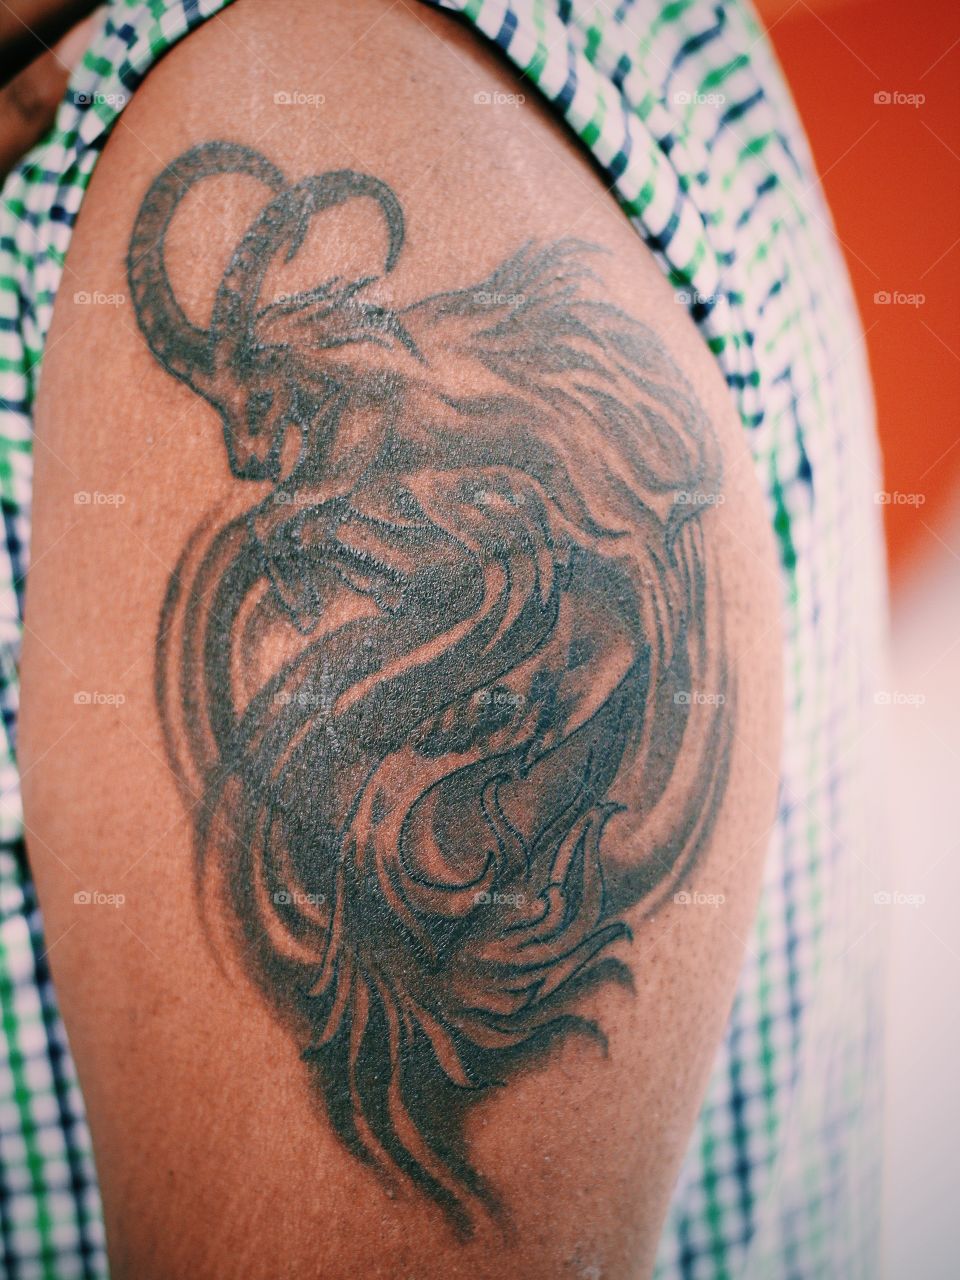 Taurus tattoo on arm 